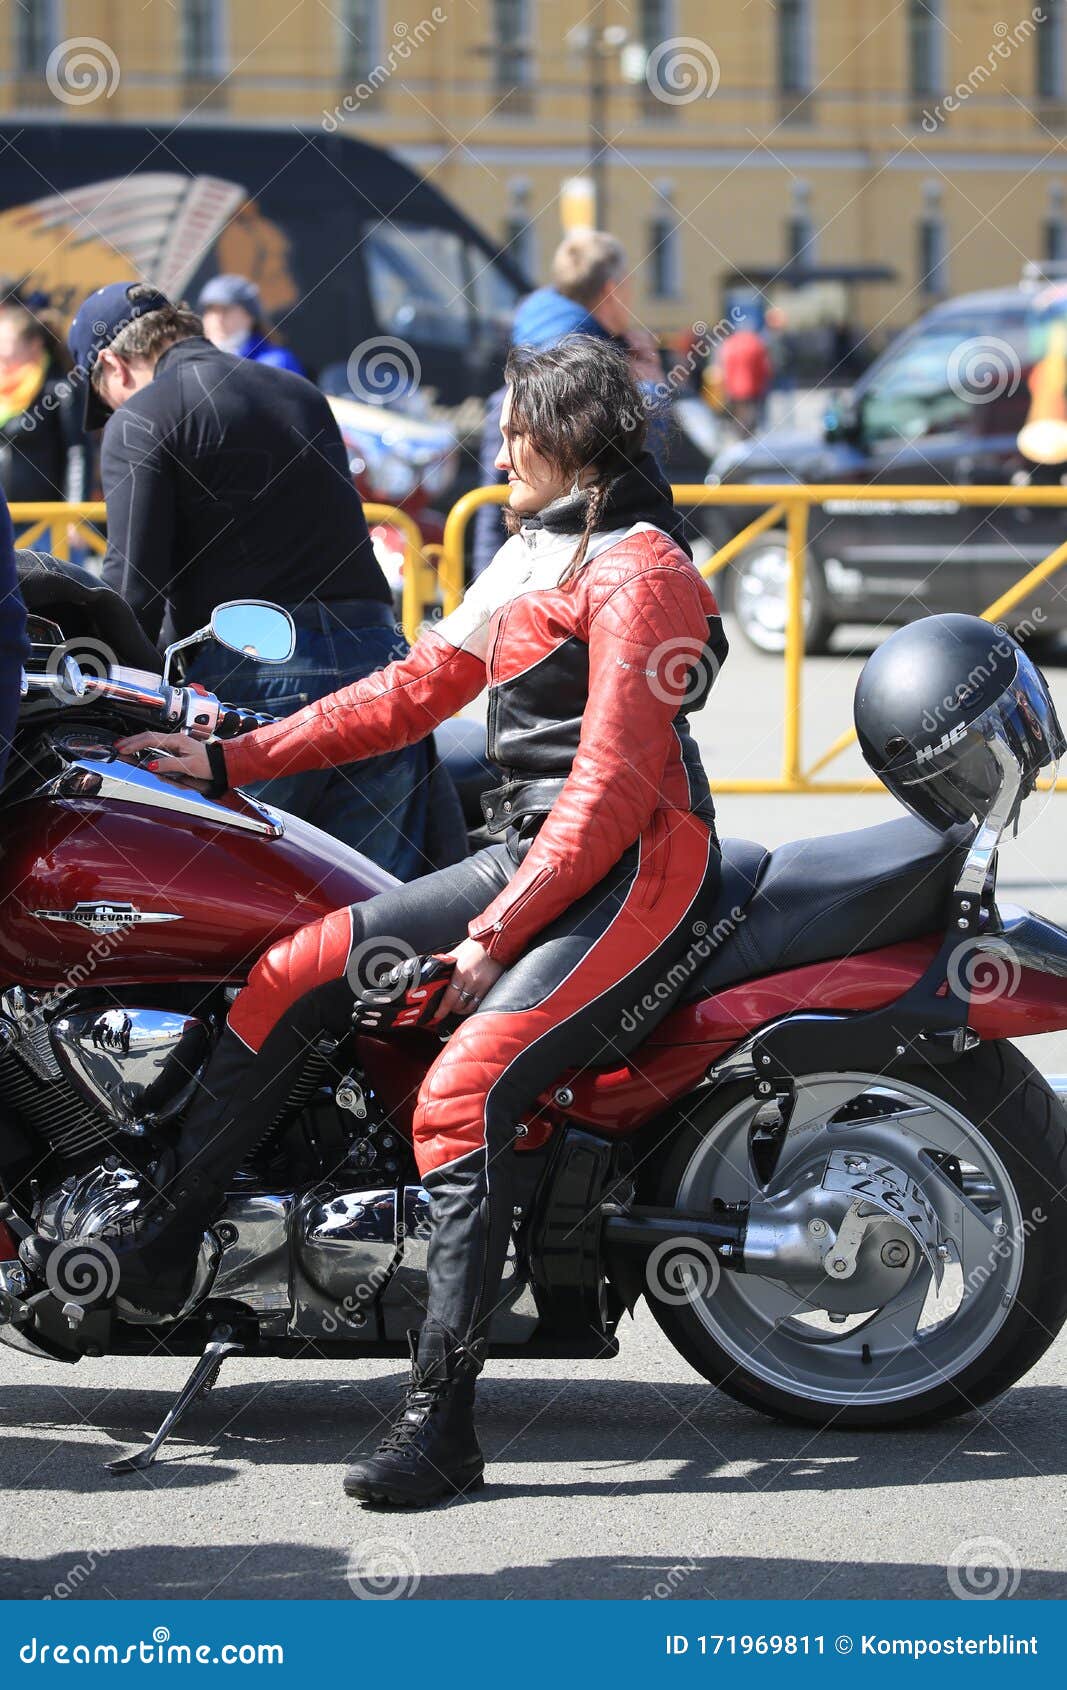 leather biker jumpsuit